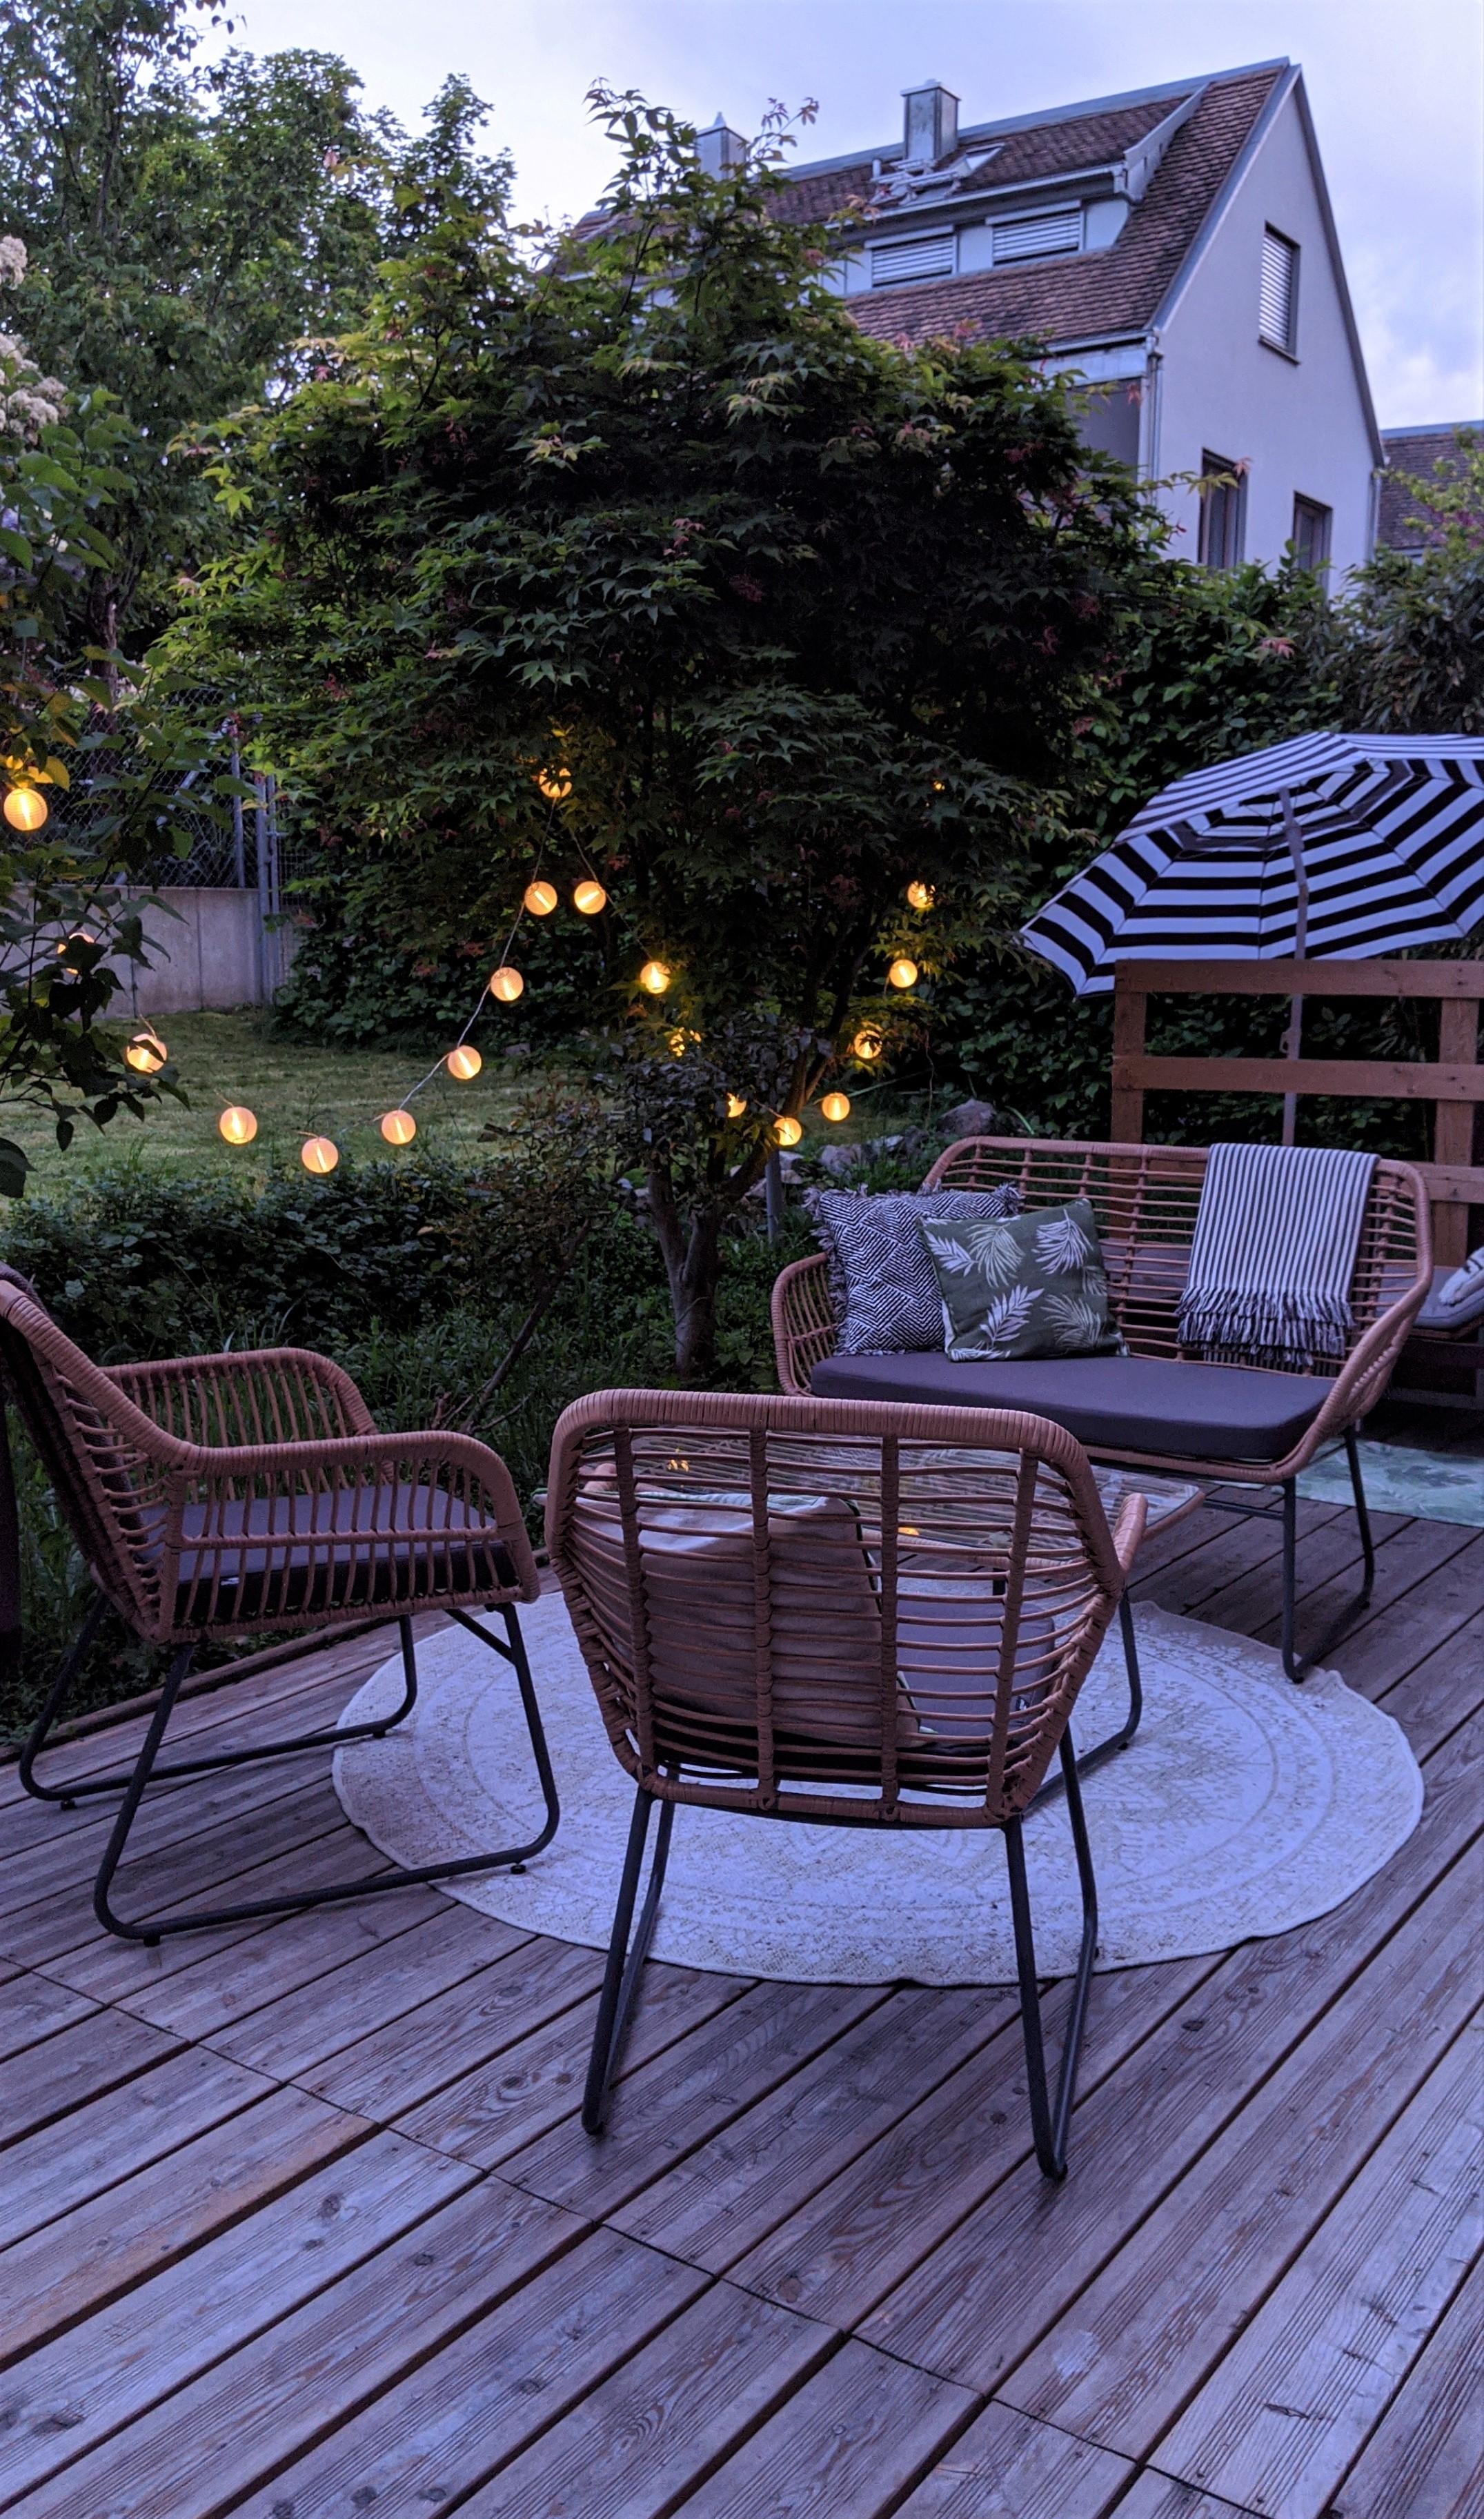 Die Terrassenmöbel sind endlich da! #terrasse #terrassenmöbel #gartenmöbel #garten #outdoorlounge #lichterkette #boho